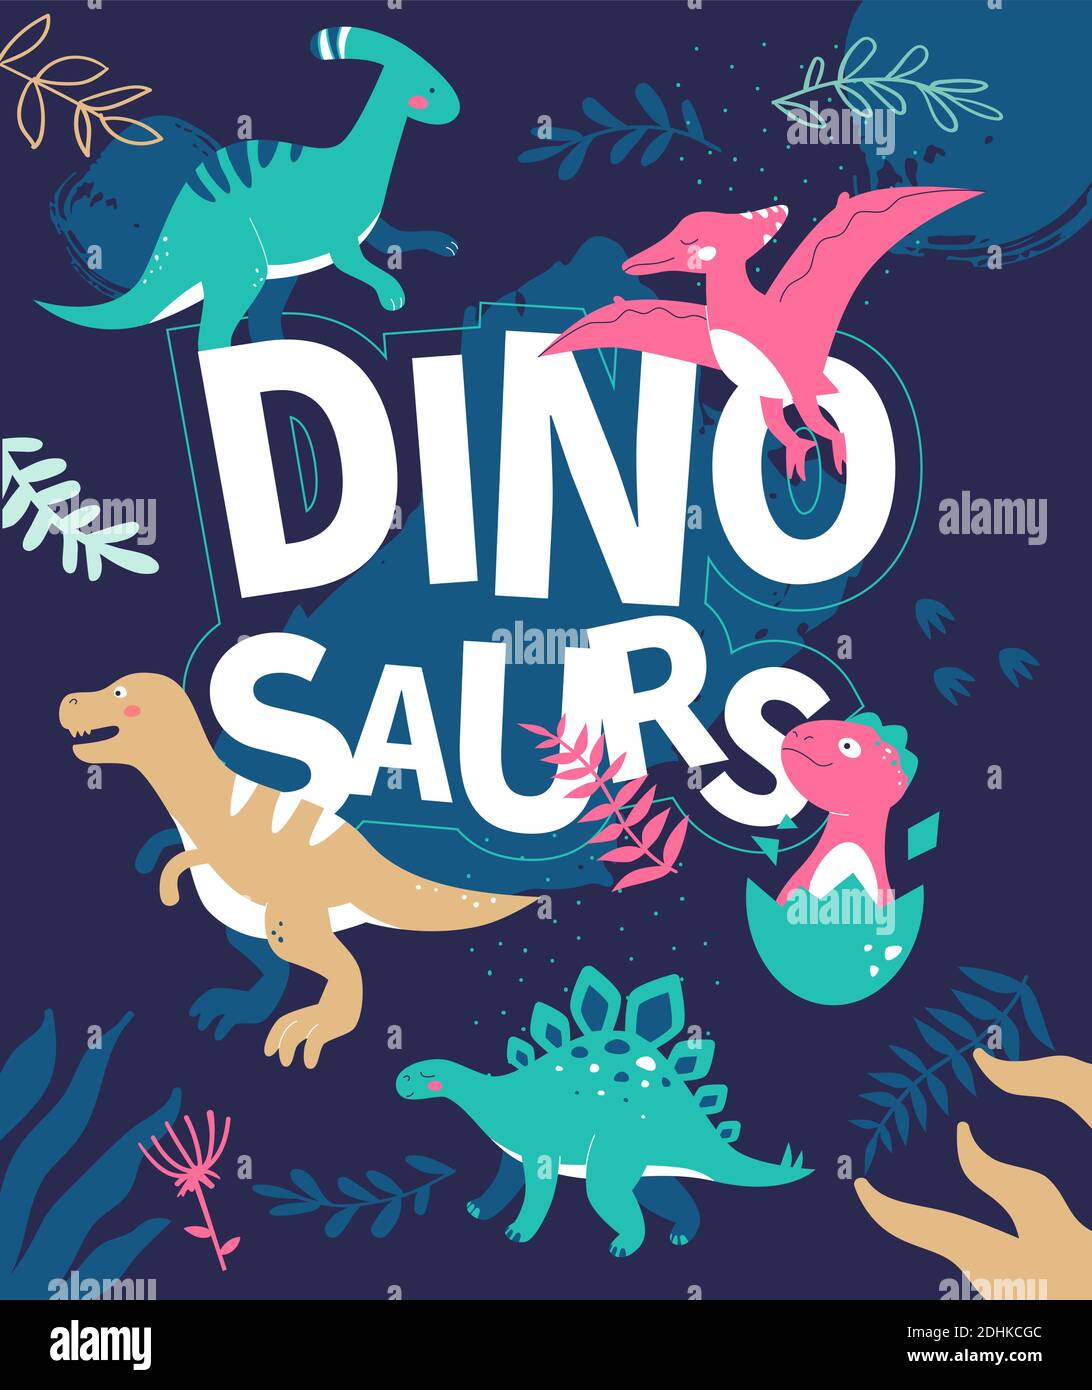 Dinosaures - illustration de style plat avec caractères sur fond bleu. L'idée des temps préhistoriques. Images d'animaux éteintes, ornitosaurus, T-rex, pa Illustration de Vecteur